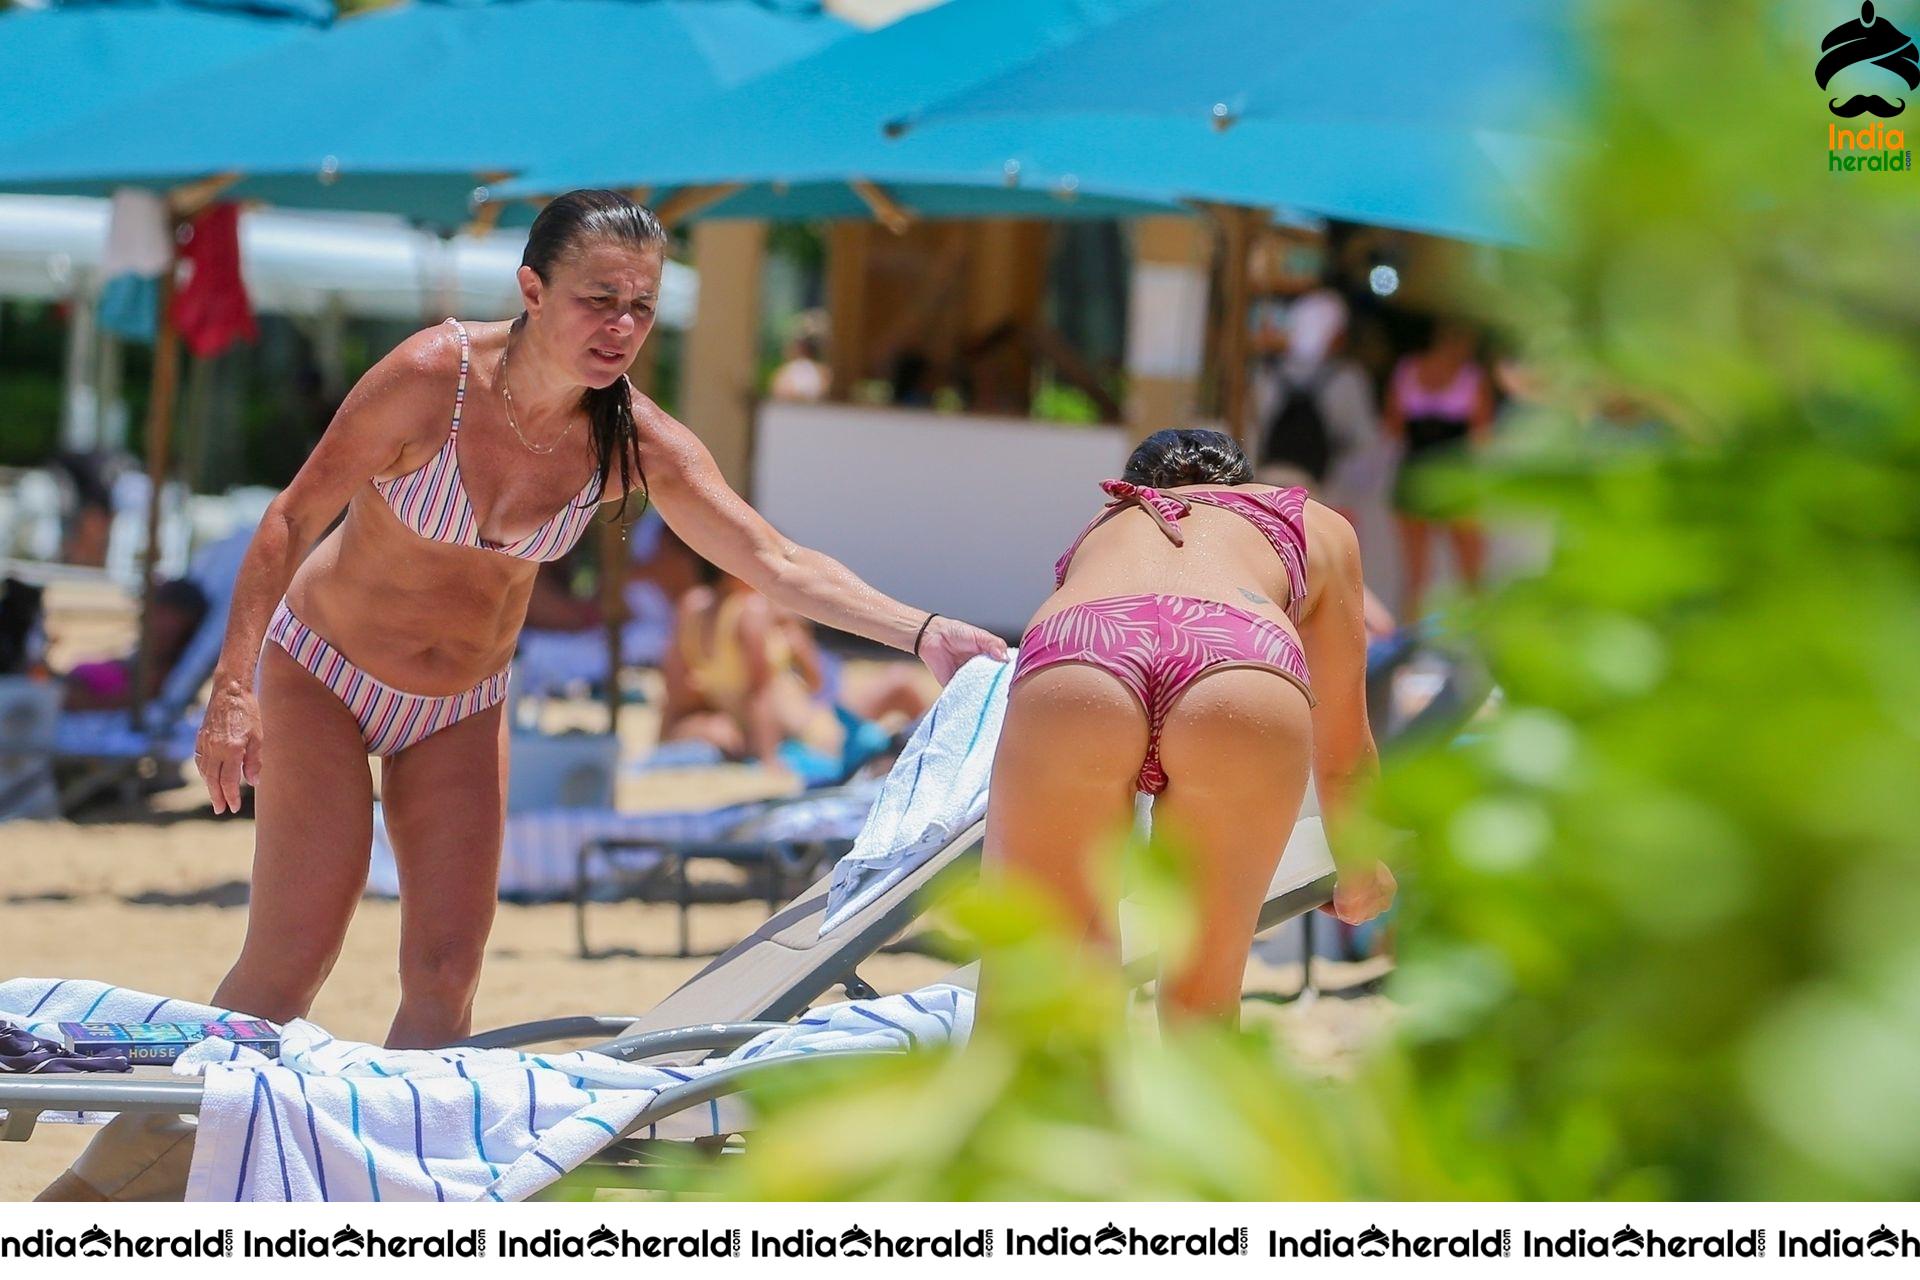 Lea Michele In Bikini At Beach In Hawaii Set 2